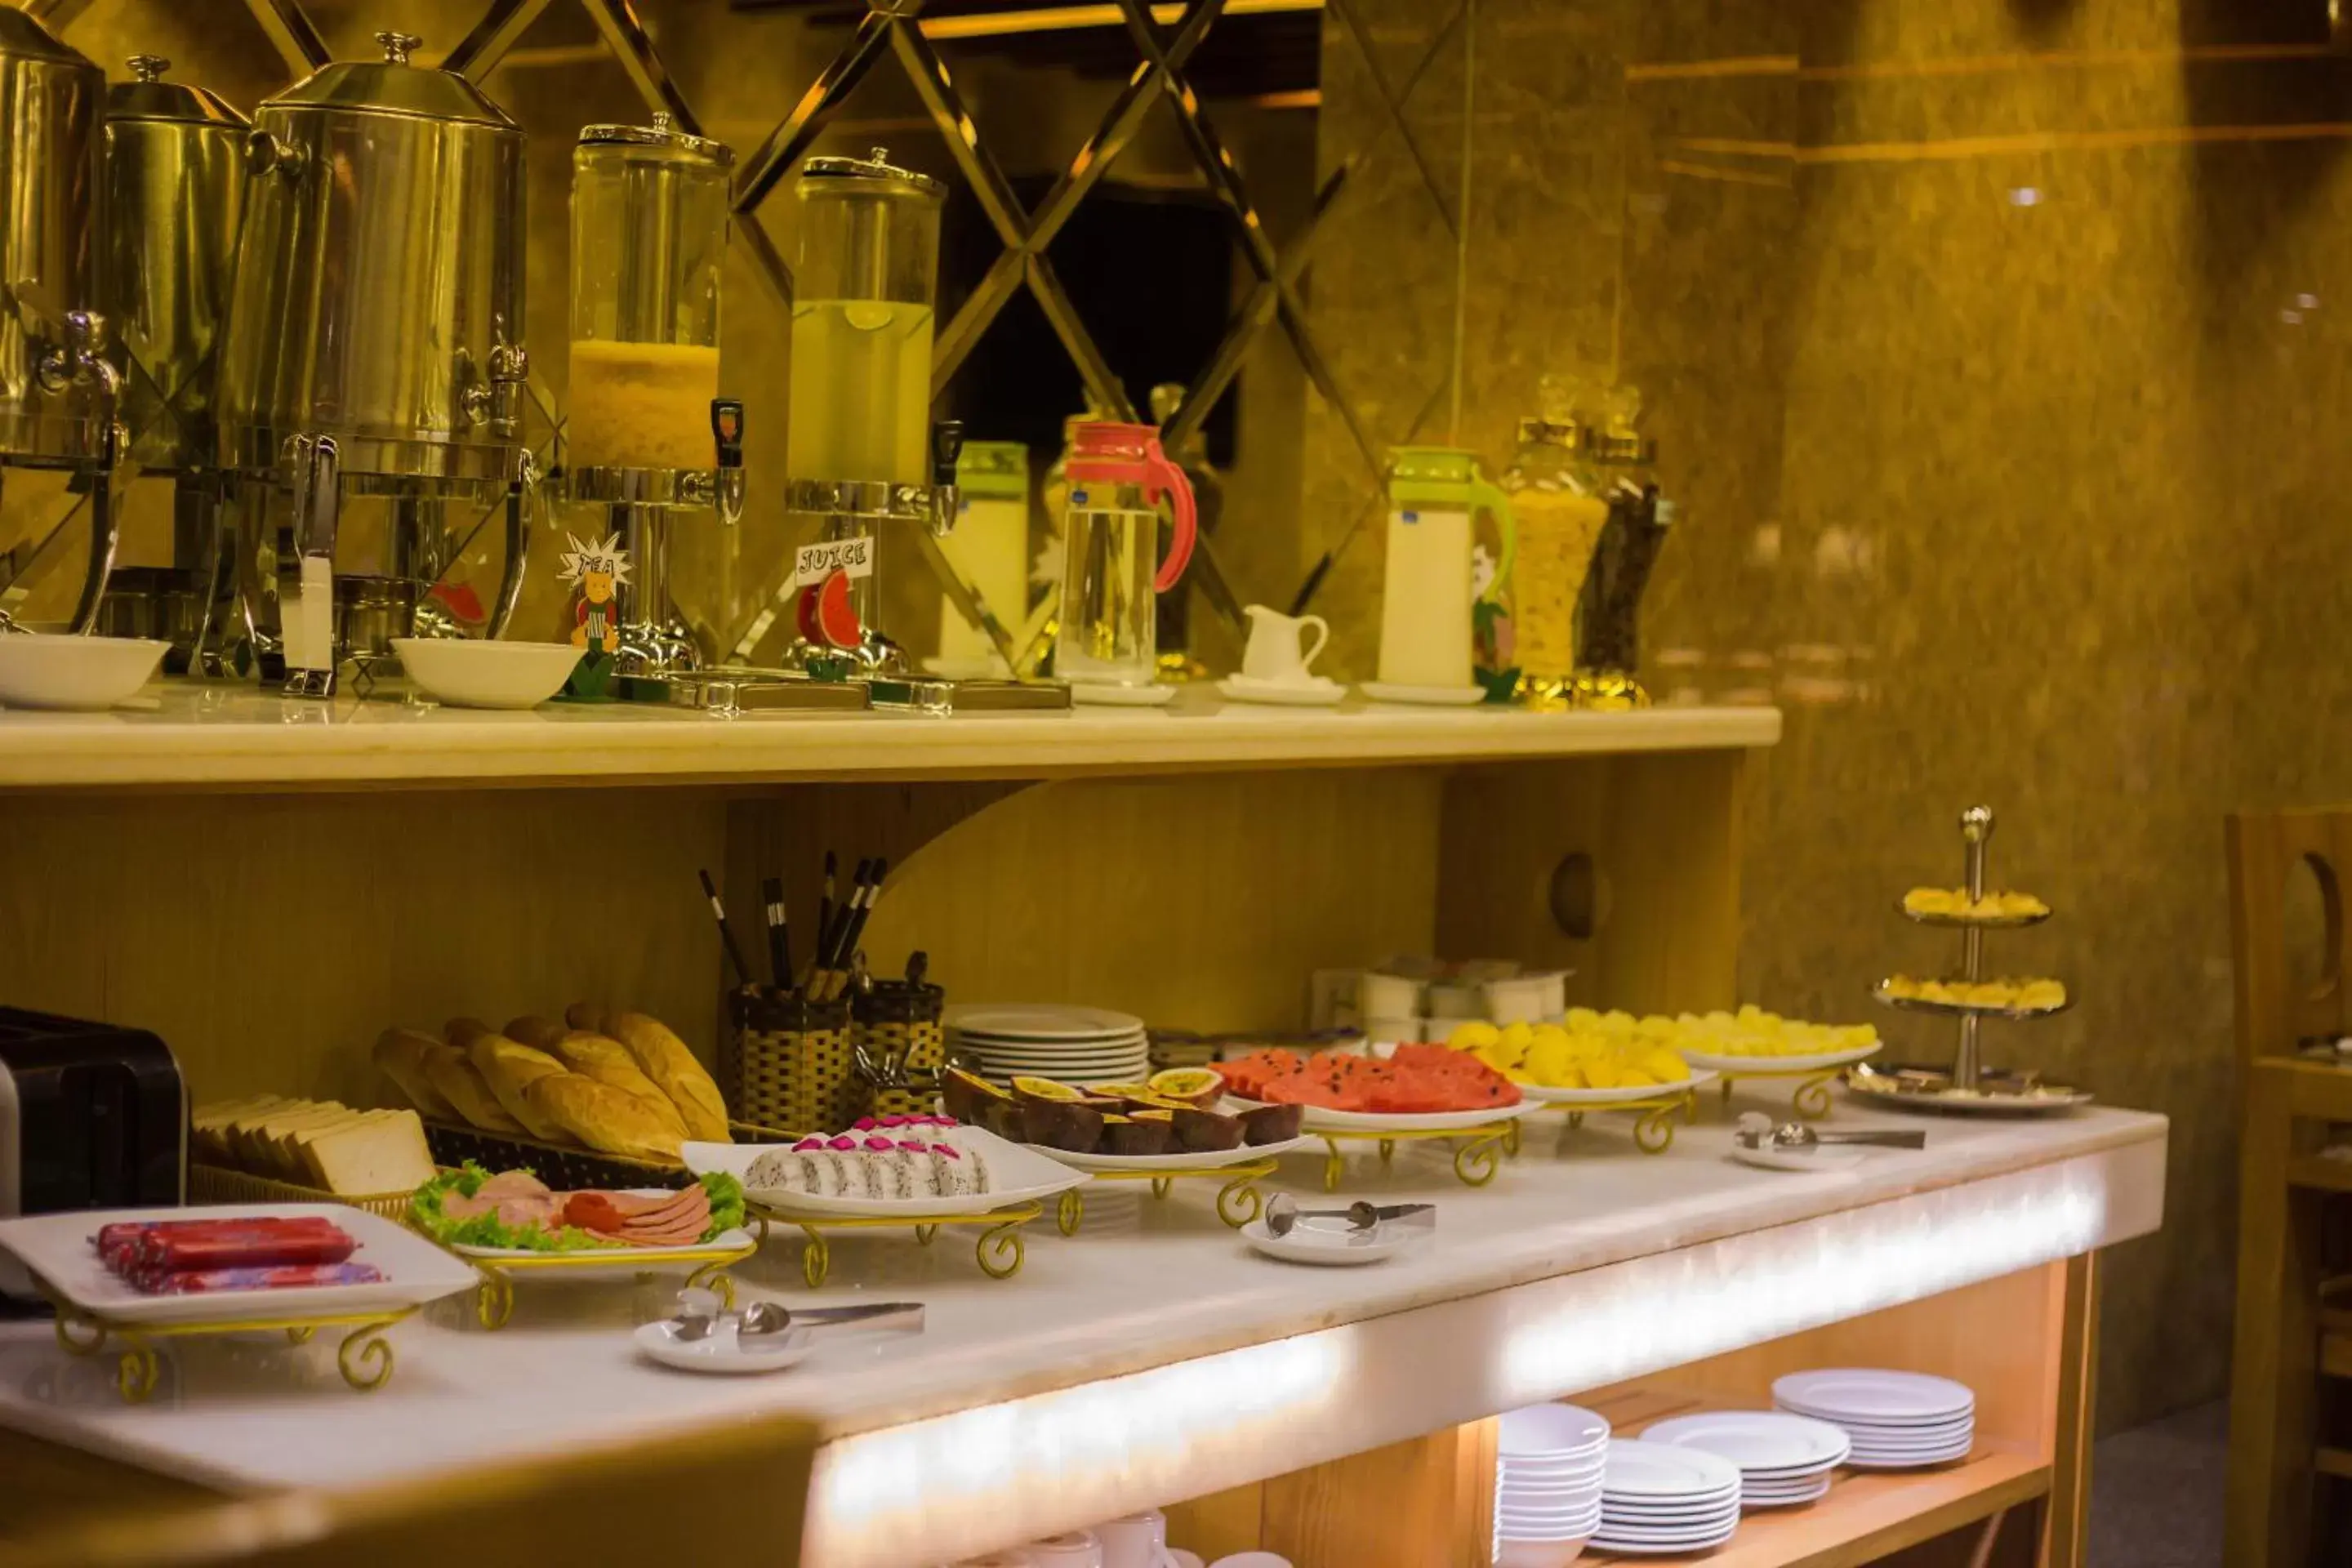 Buffet breakfast in Golden Art Hotel